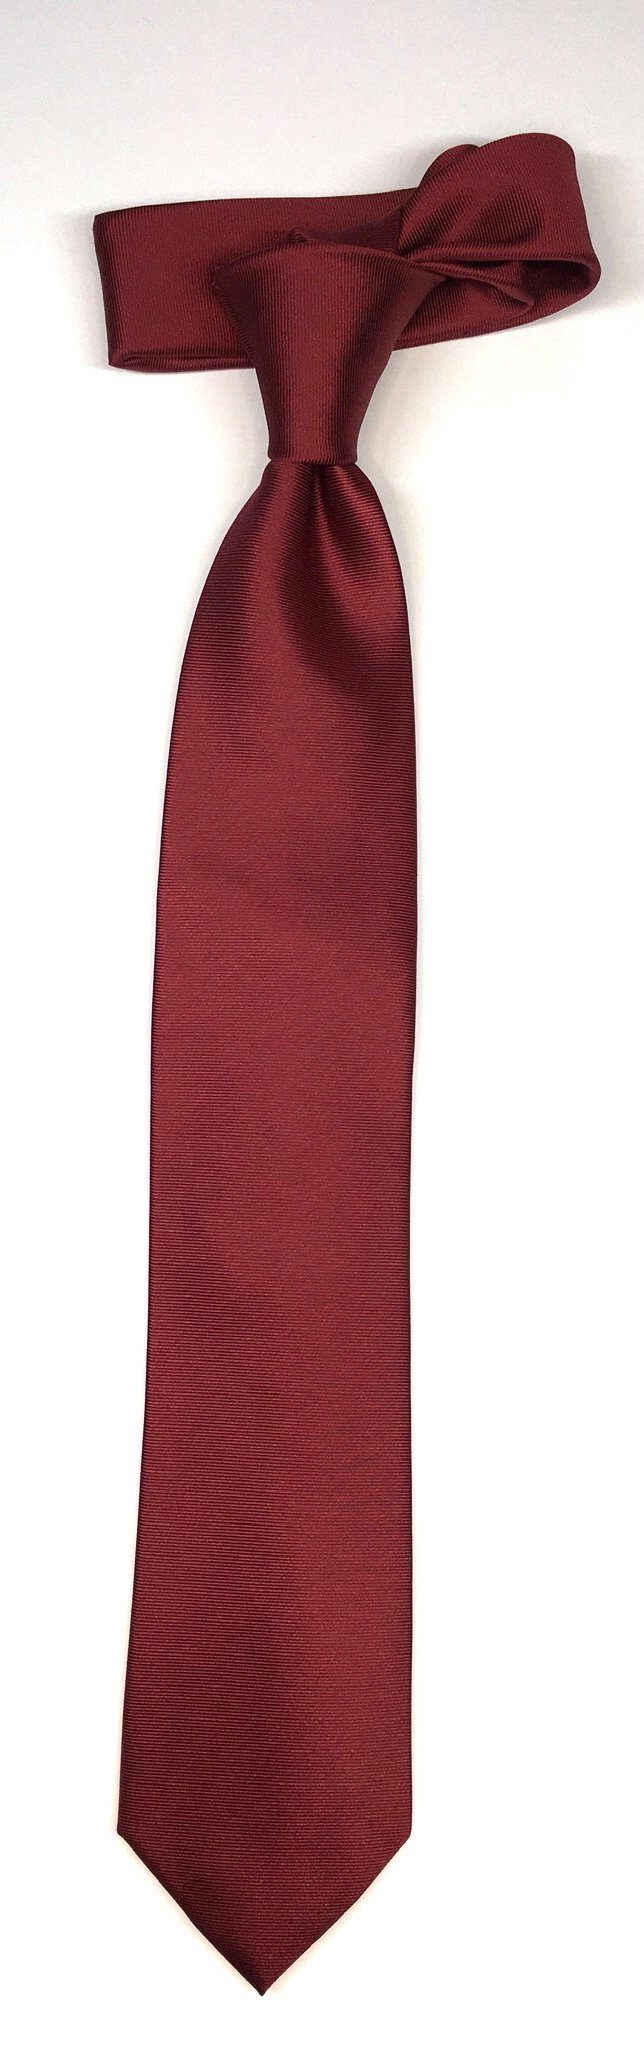 Seidenfalter Seidenfalter Seidenfalter edlen Bordeaux Krawatte im Uni Krawatte Uni Krawatte Design 7cm